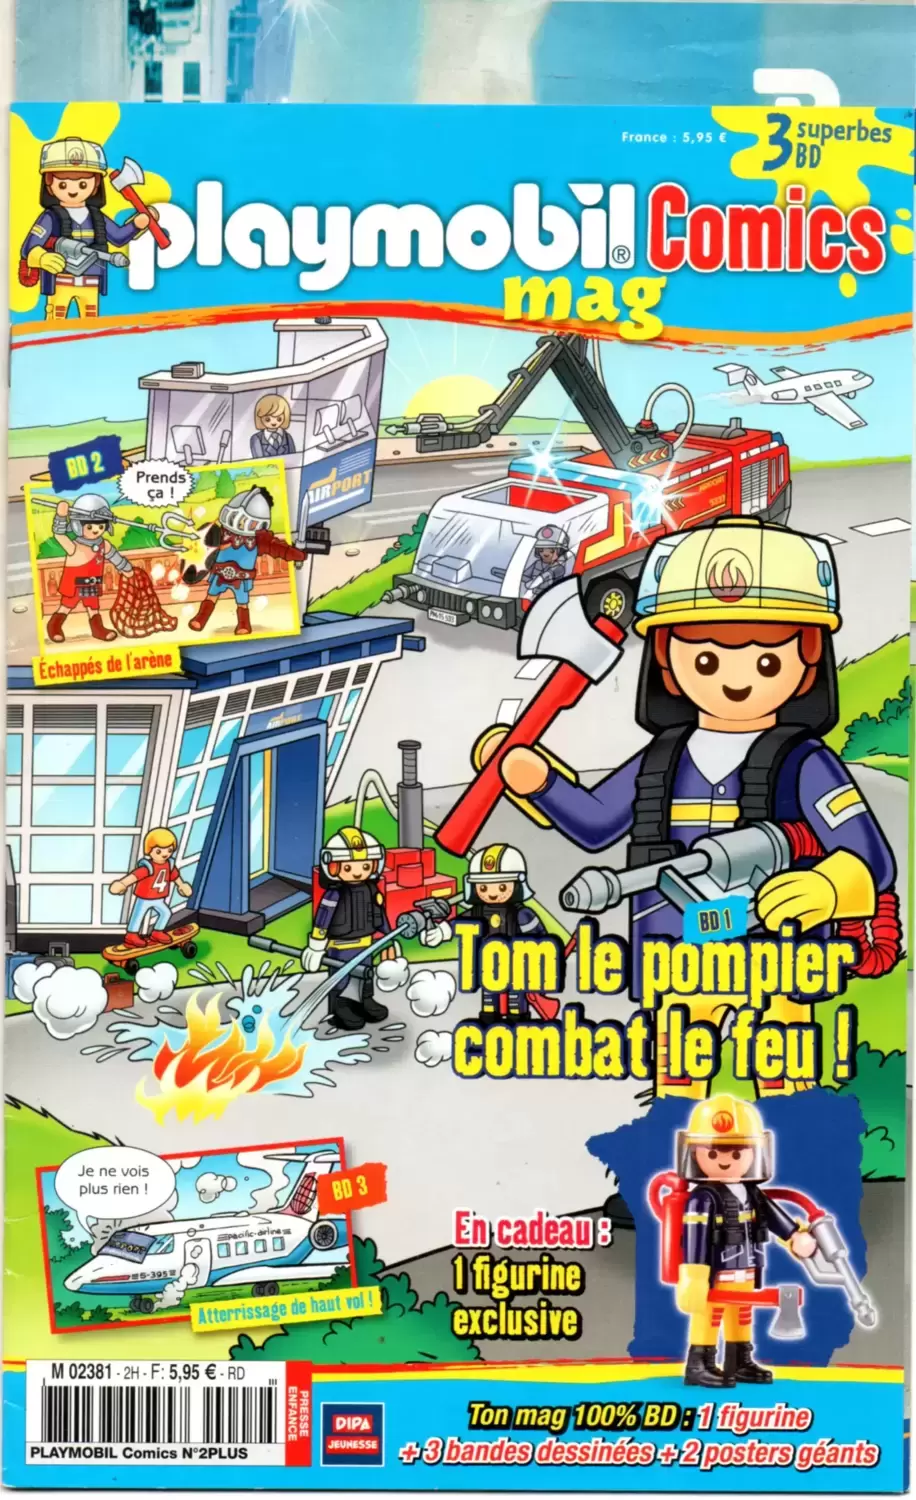 Playmobil Comics Mag - Tom le pompier combat le feu